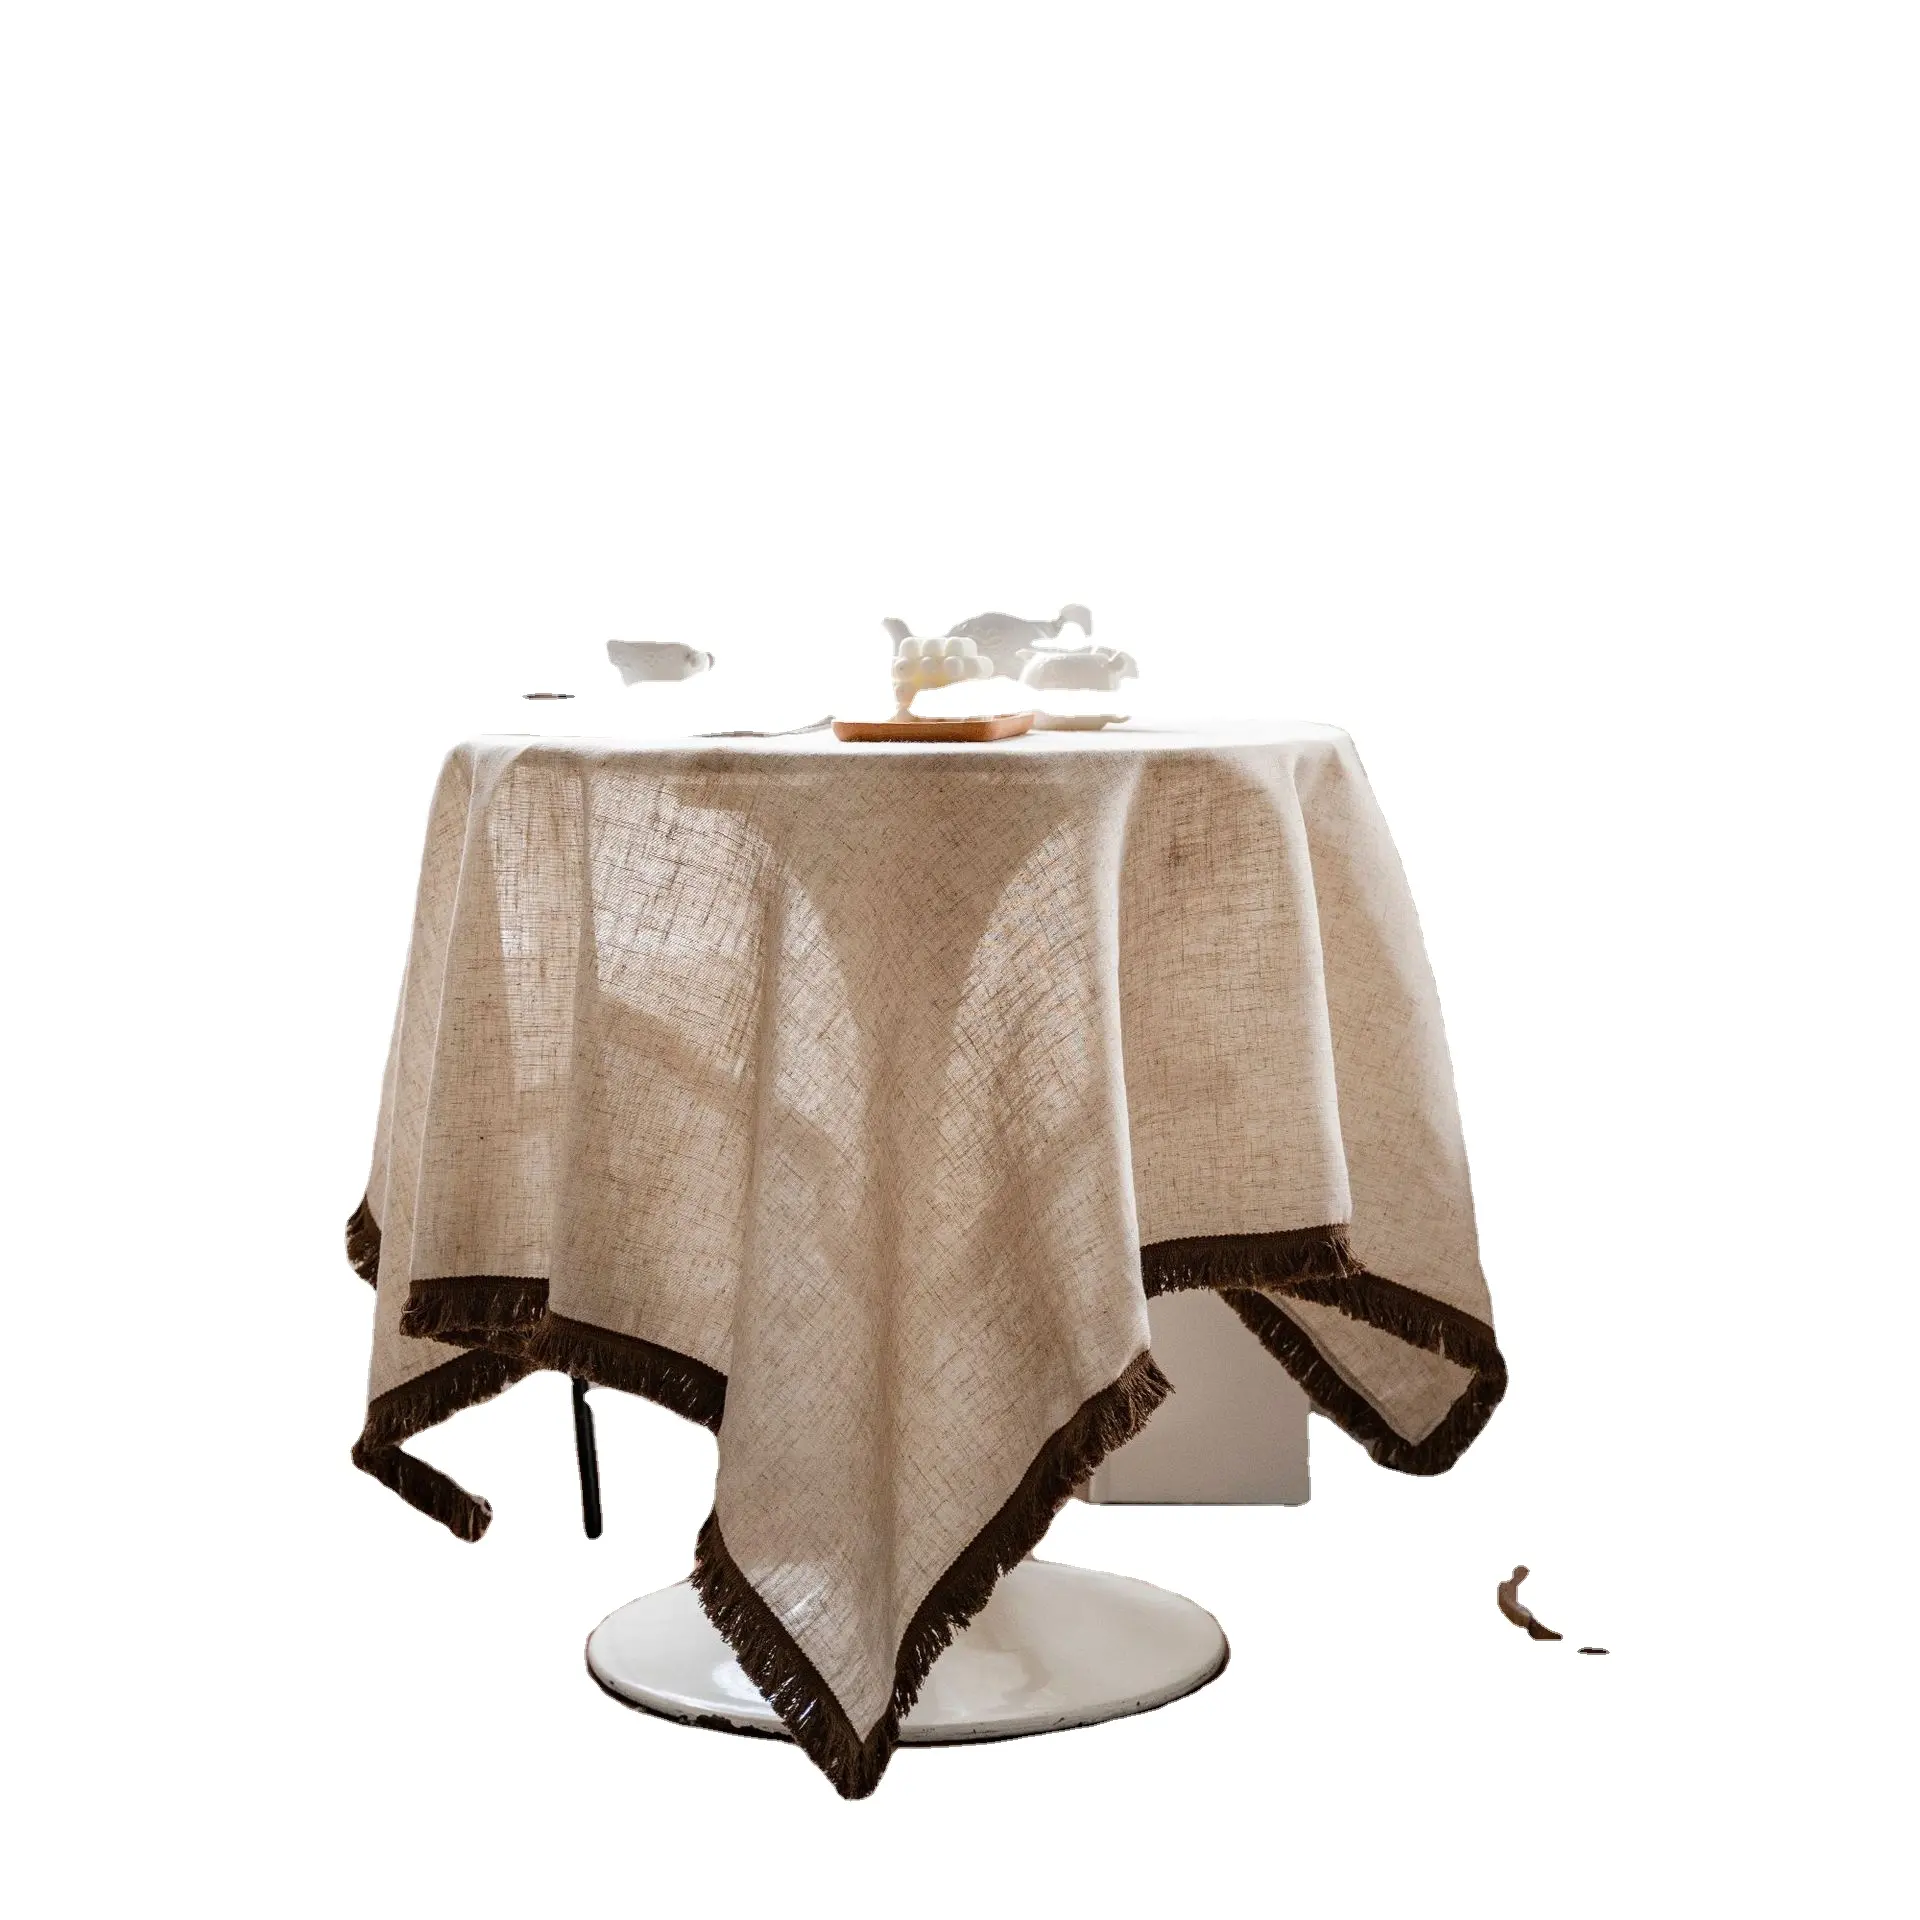 Обложка для стола на заказ шпагат из полиэстера и льна в американском стиле, Обложка для обеденного стола, кофейная прямоугольная скатерть